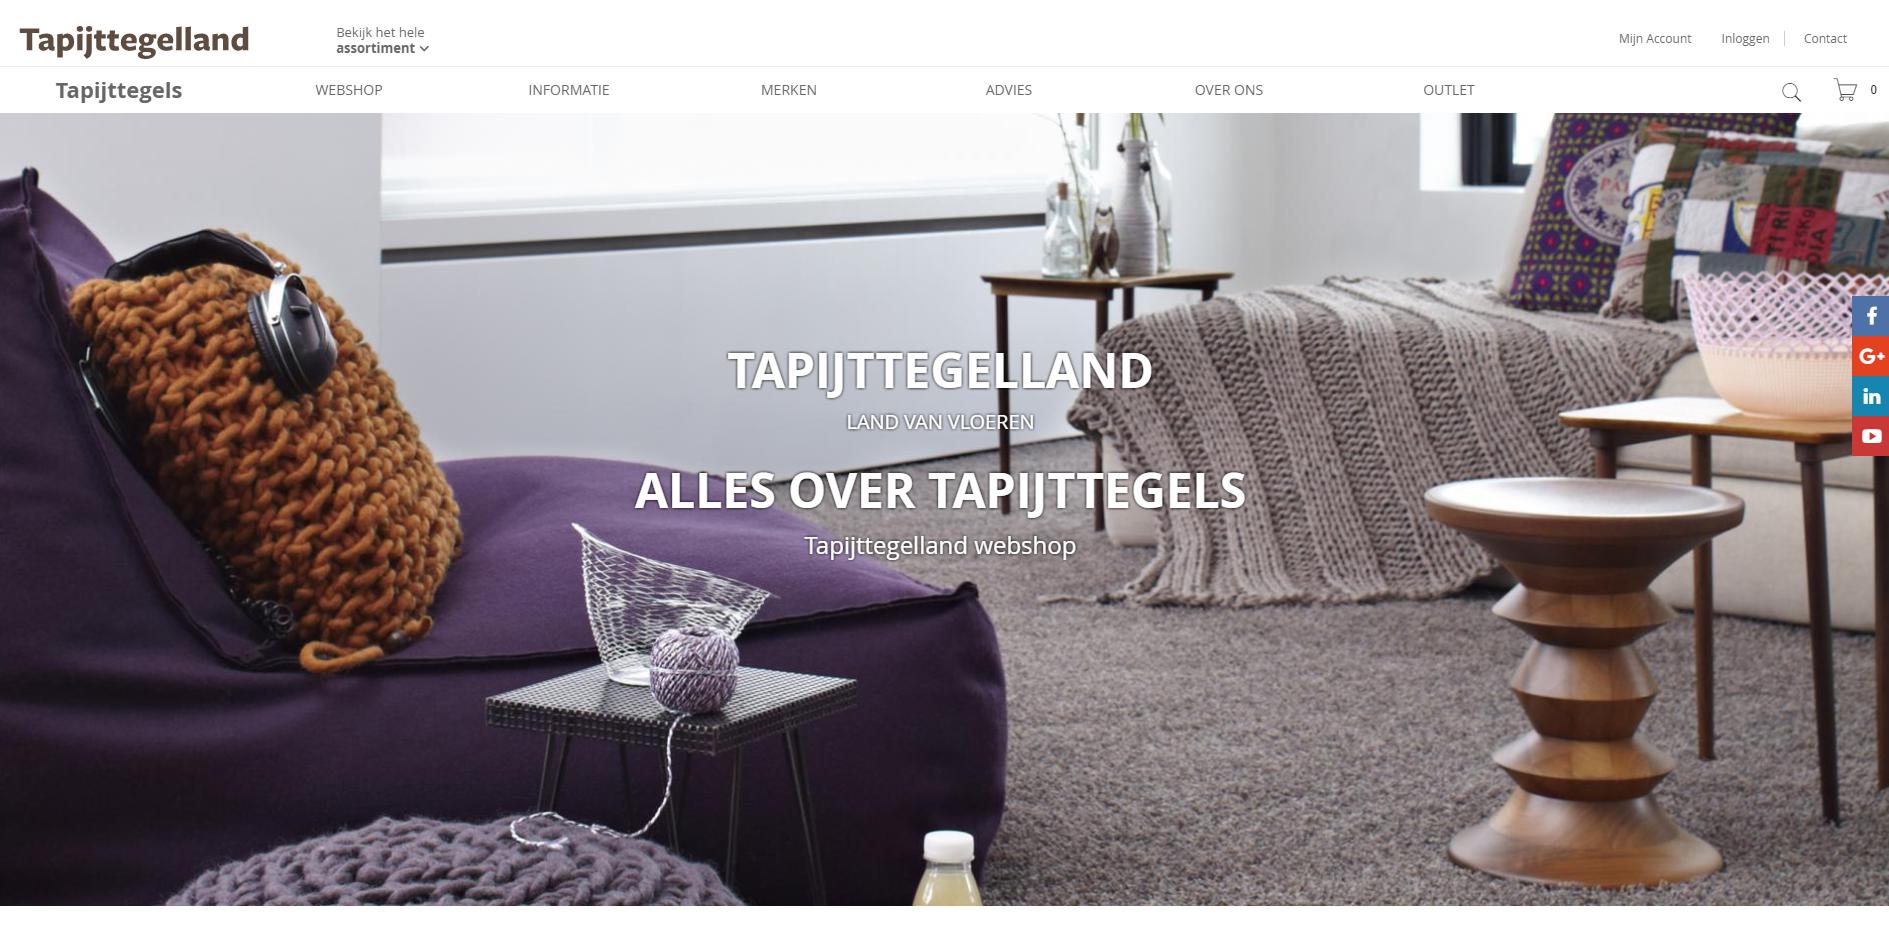 Website Tapijttegelland